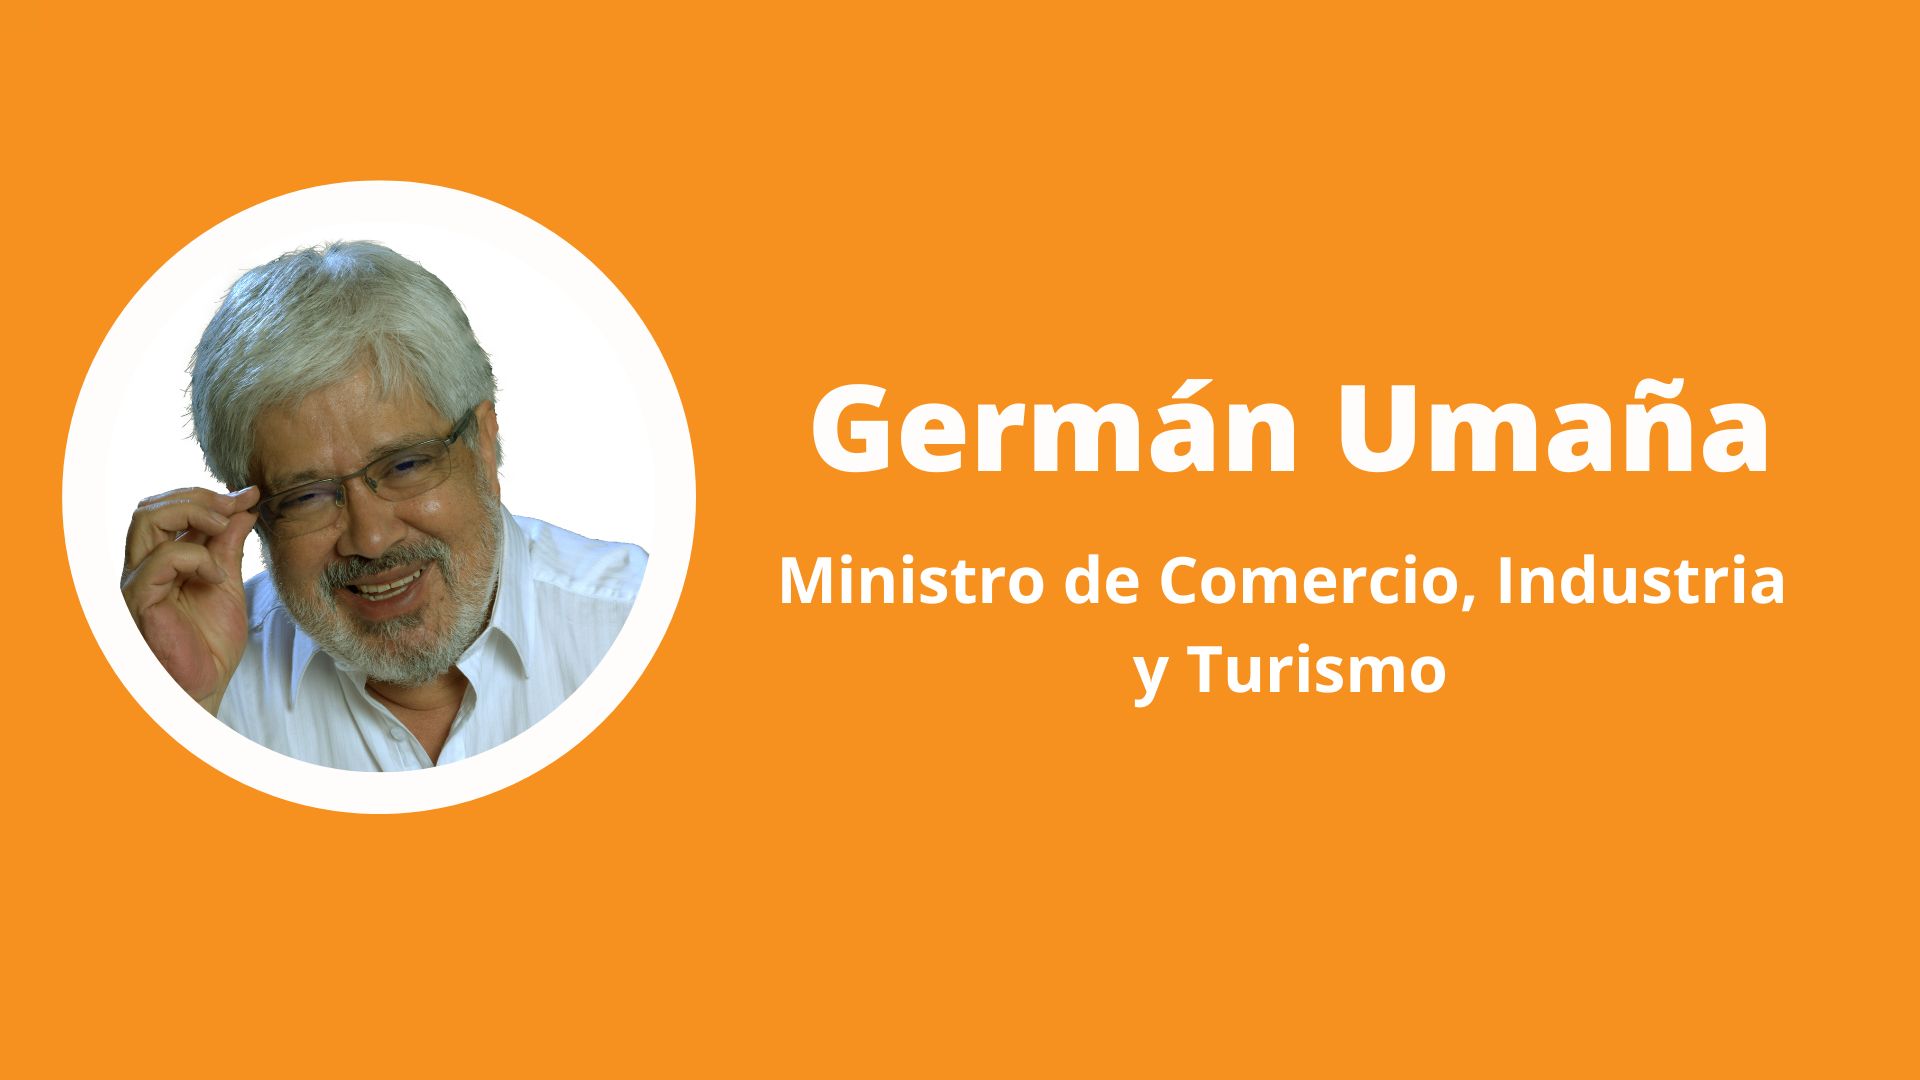 Germán Umaña es el nuevo ministro de Comercio, Industria y Turismo